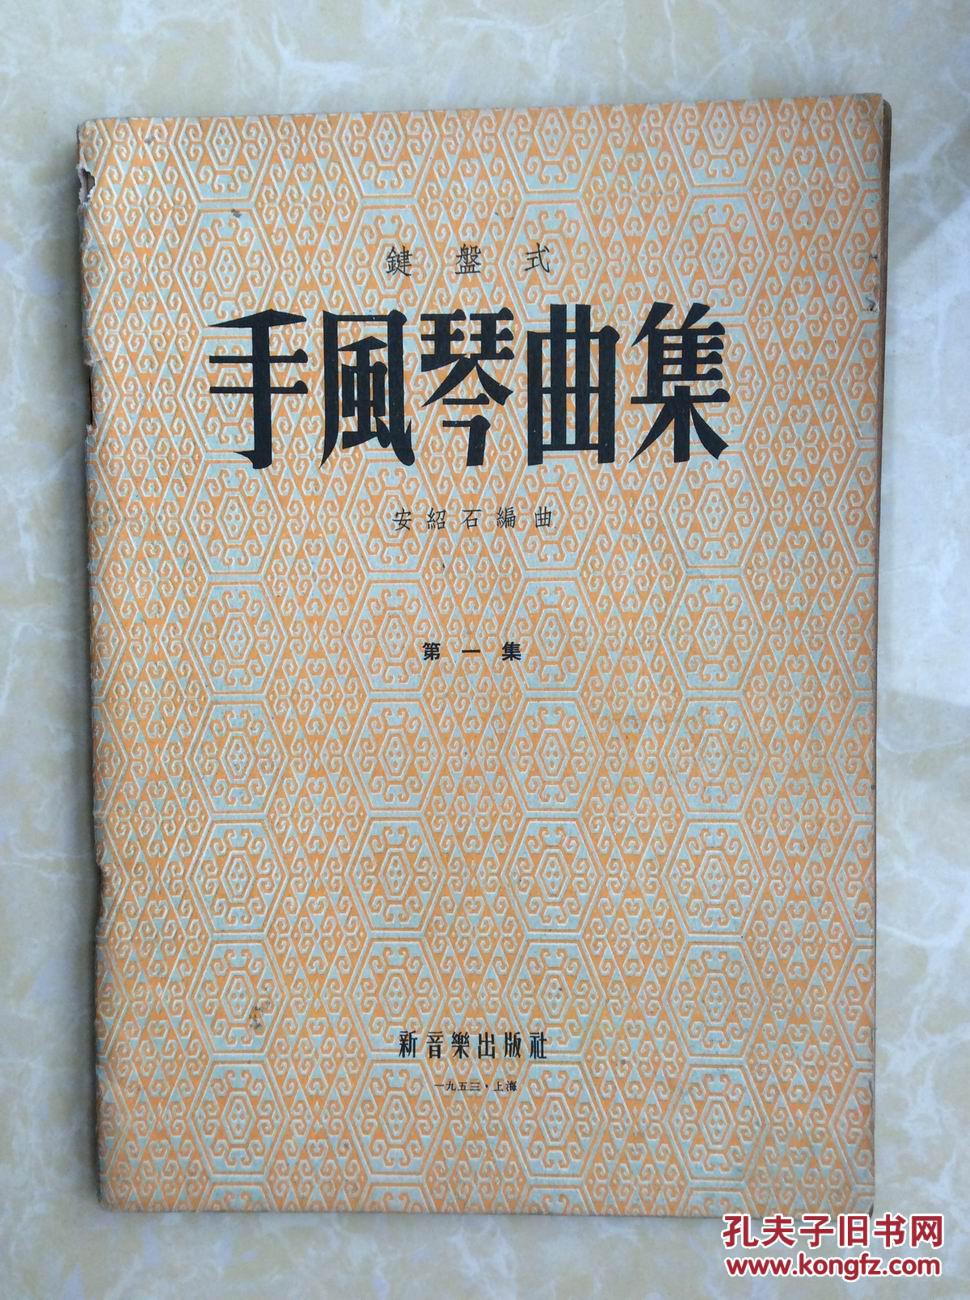 1953年新音乐出版社出版（键盘式）《手风琴曲集》第一集【潘政华藏书】